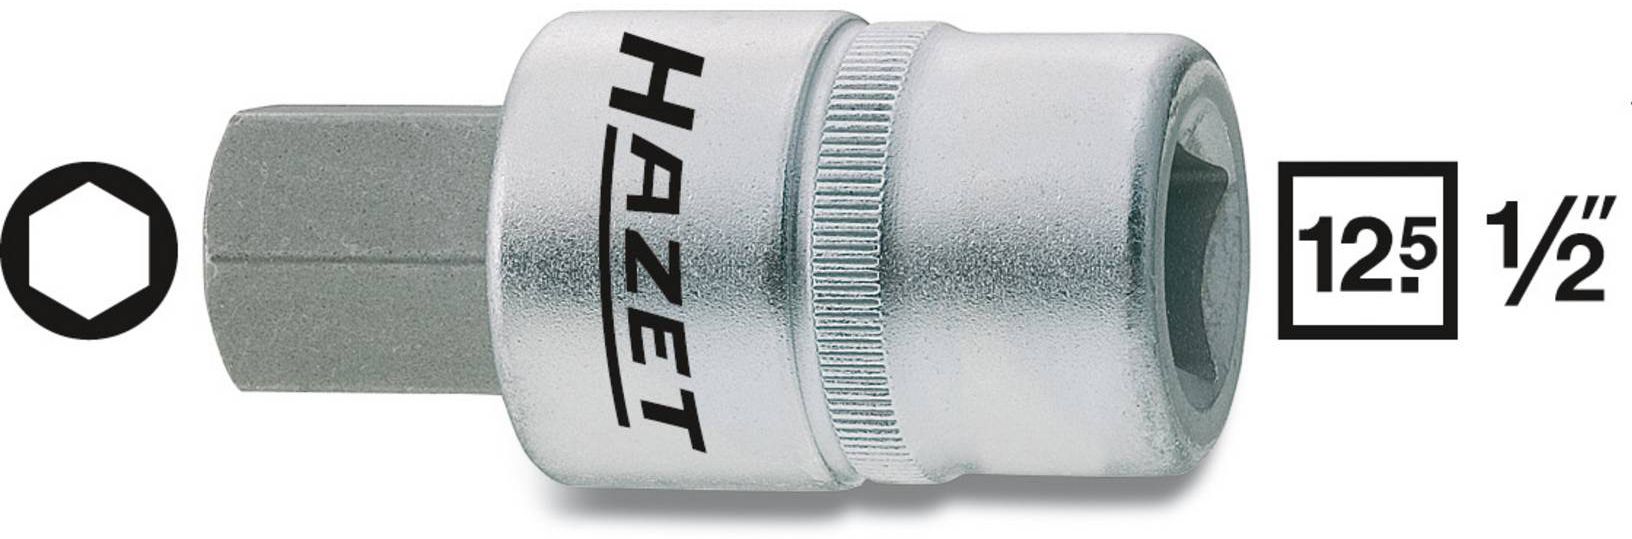 HAZET Schraubendreher-Einsatz, Inbus 986-6mm, 1/2", L: 60mm, D: 23mm - Steck- und Drehmomentschlüssel